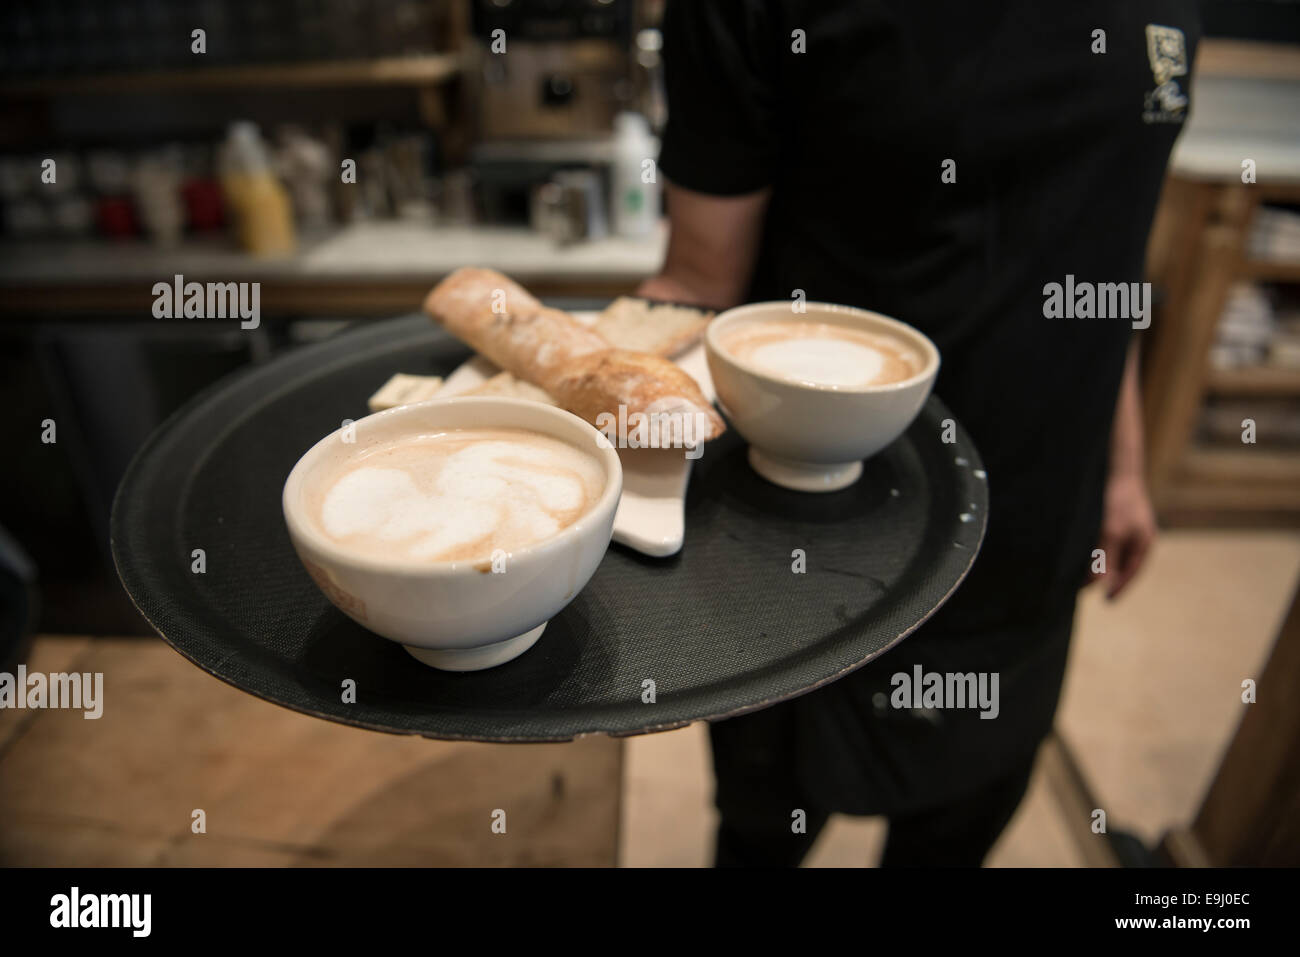 Fotografías de interior y detalles de un café francés durante la hora del desayuno Foto de stock